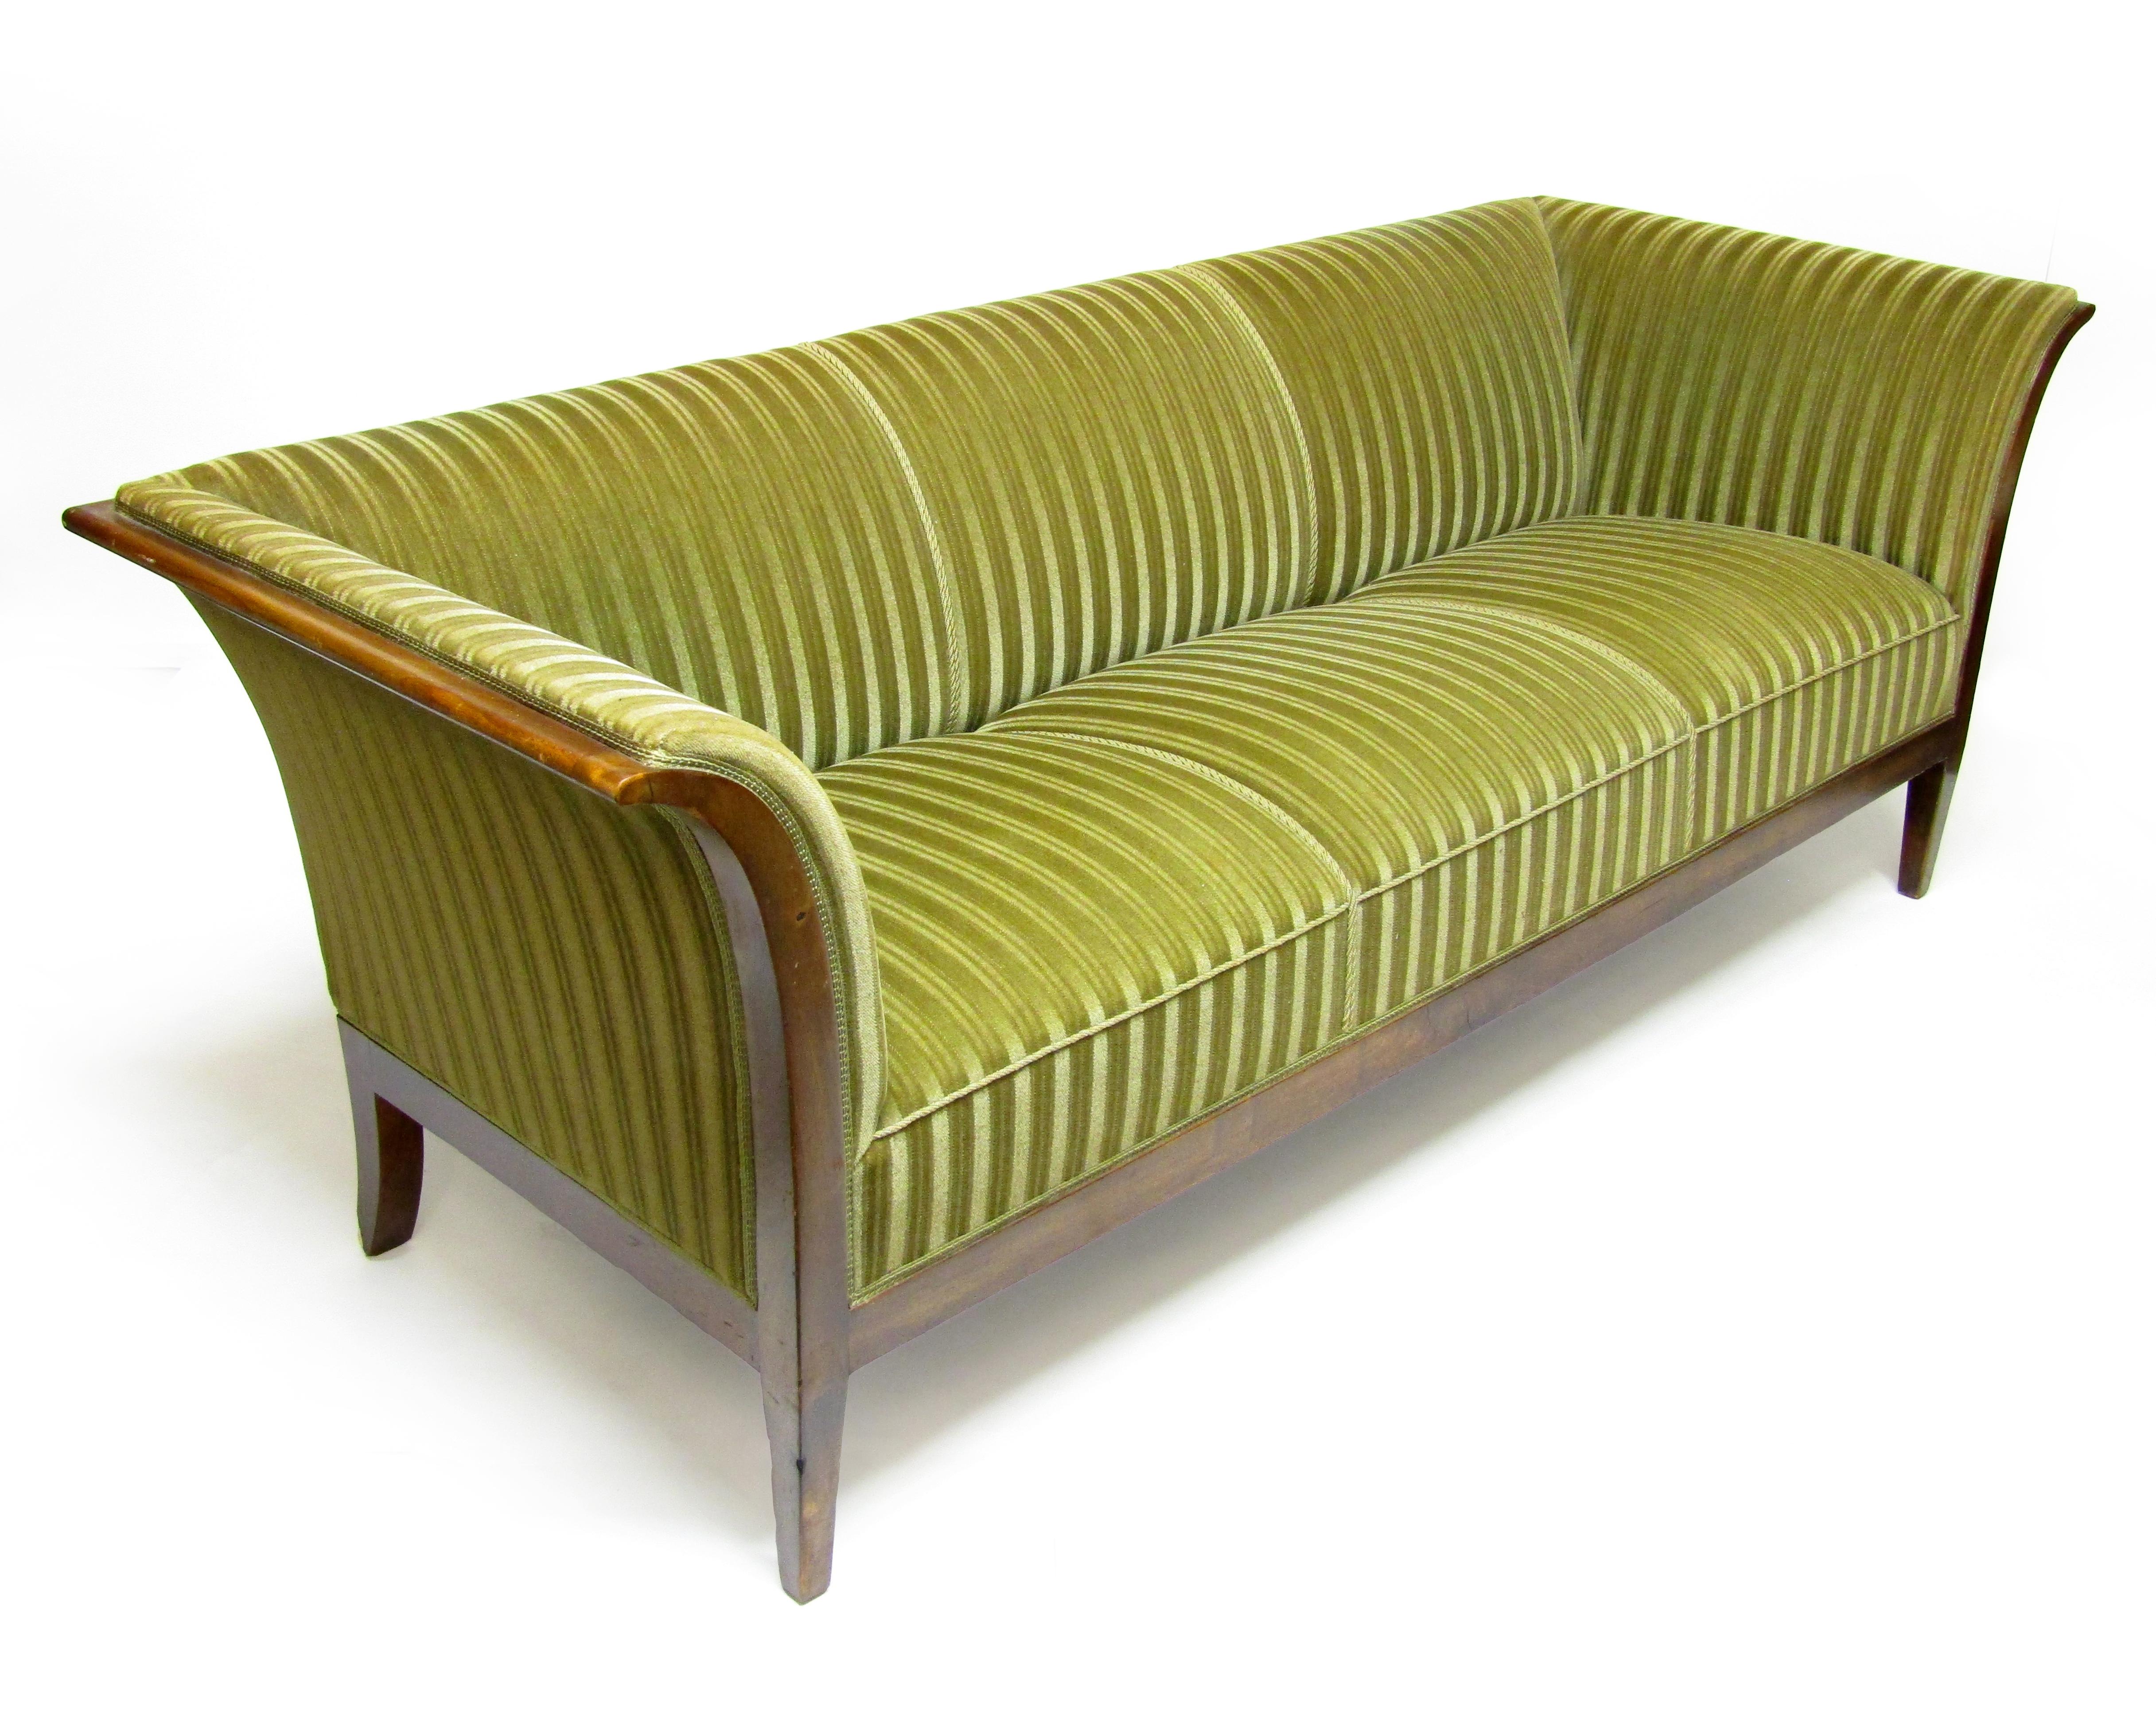 Remarquable canapé 3 places en acajou de Cuba et tissu de velours vert de Frits Henningsen.

En concurrence avec son professeur Kaare Klint, Henningsen est l'un des meilleurs designers danois du début du XXe siècle. L'un des principaux objectifs